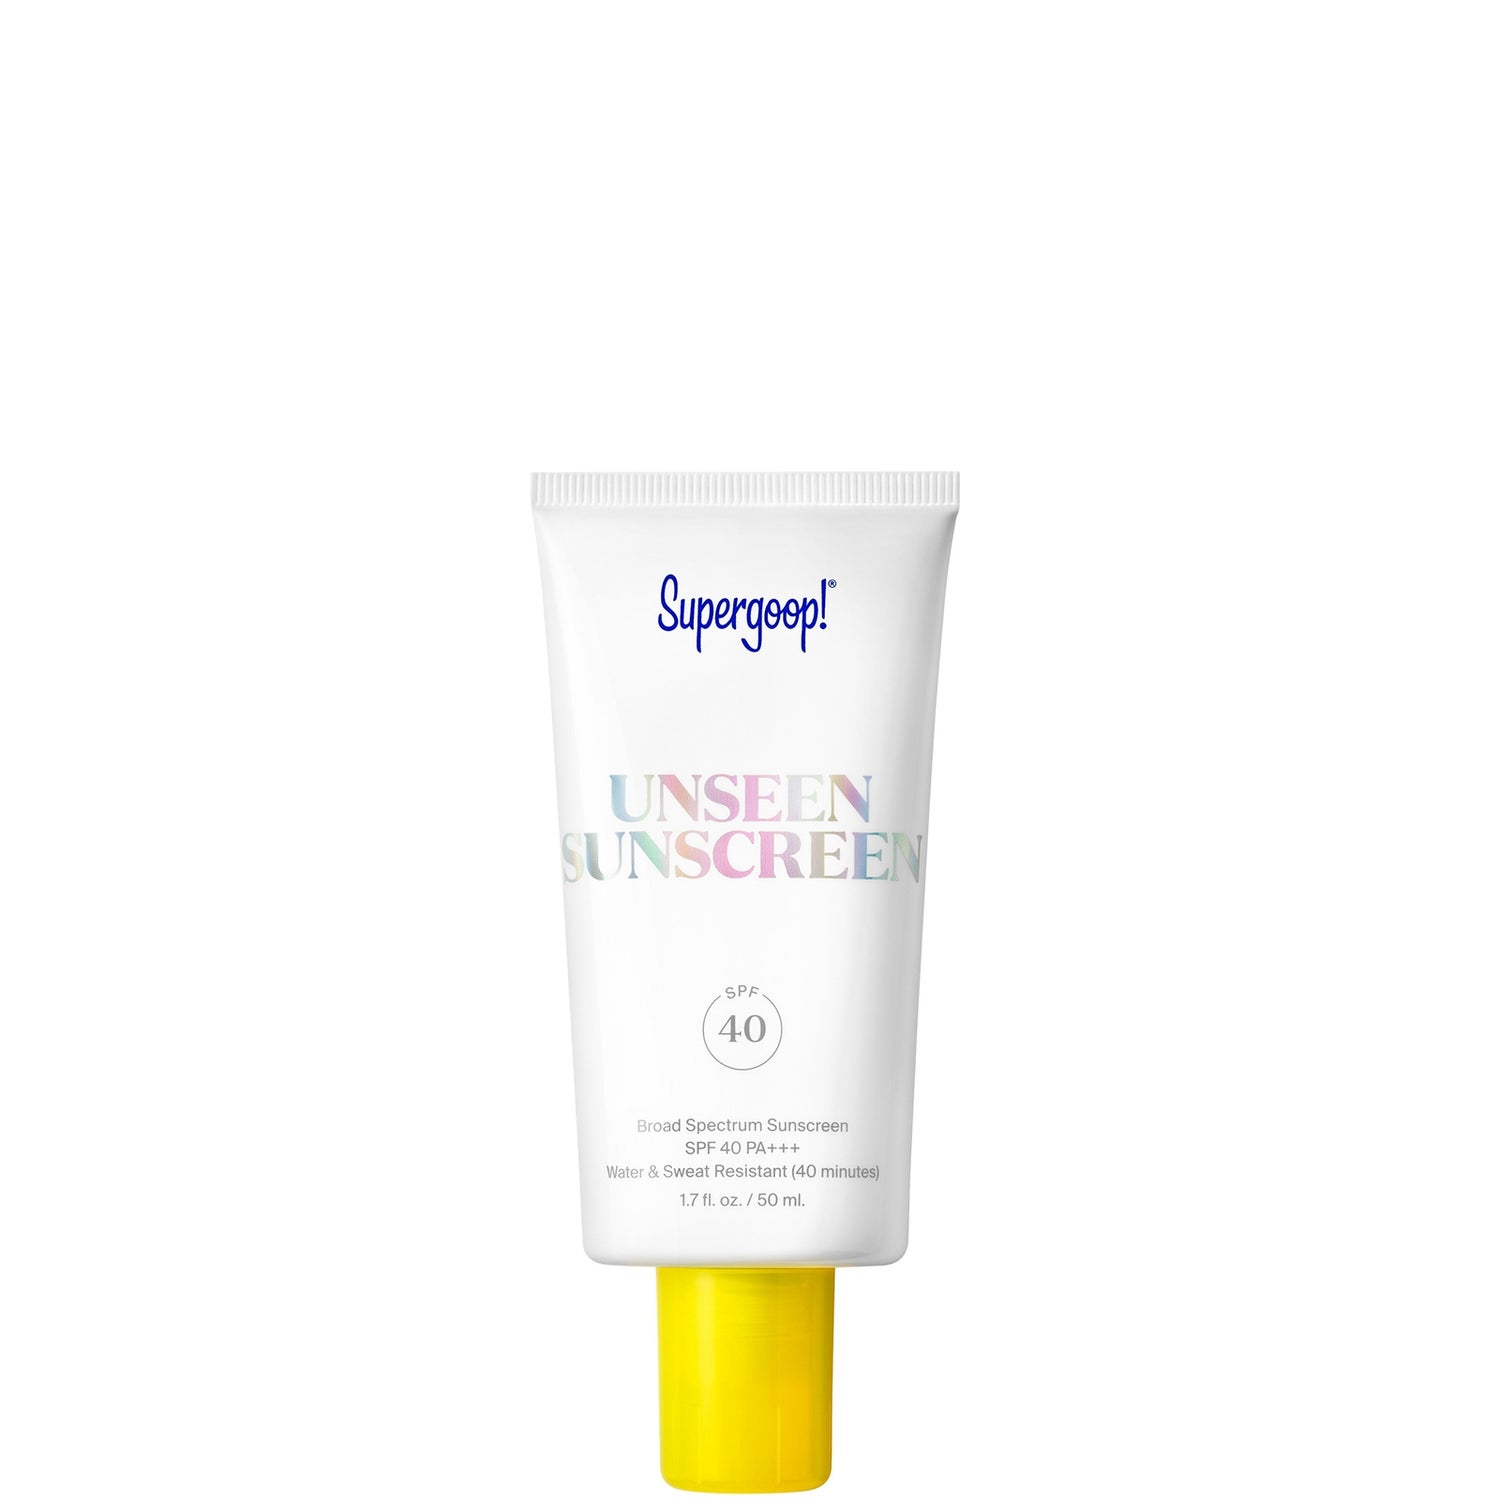 Supergoop!® Unseen Sunscreen SPF 40 1.7 fl. oz.